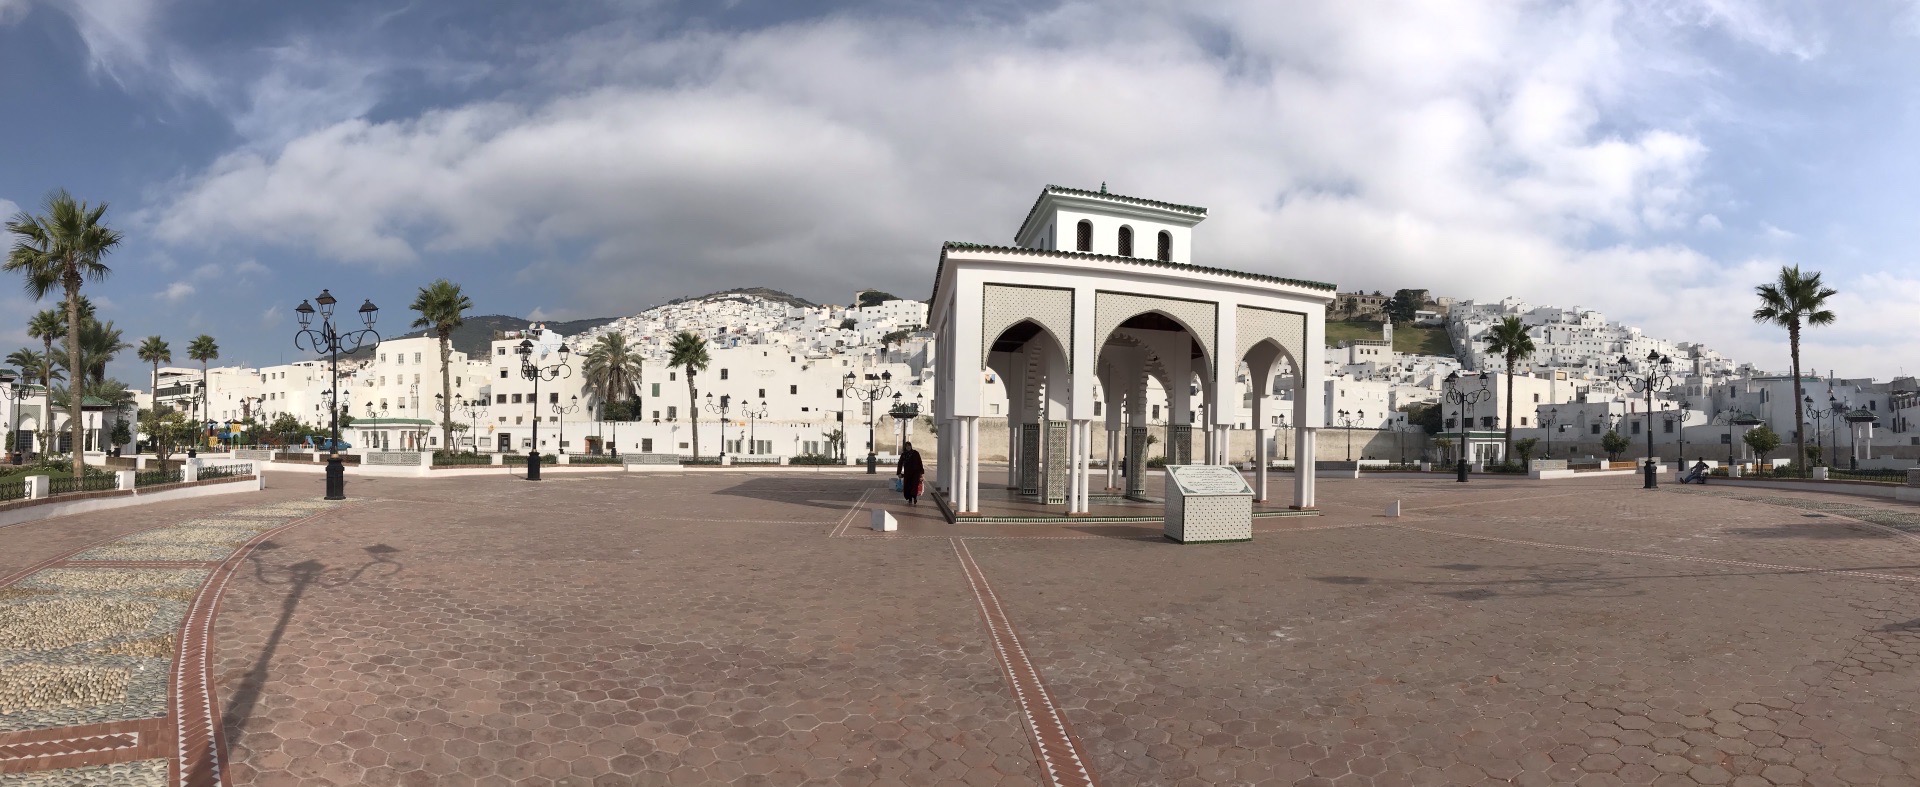 摩洛哥老城德土安，与西班牙一海之隔，有欧非大陆纽带之称，古城依山而建，以漂亮的白色房屋为主